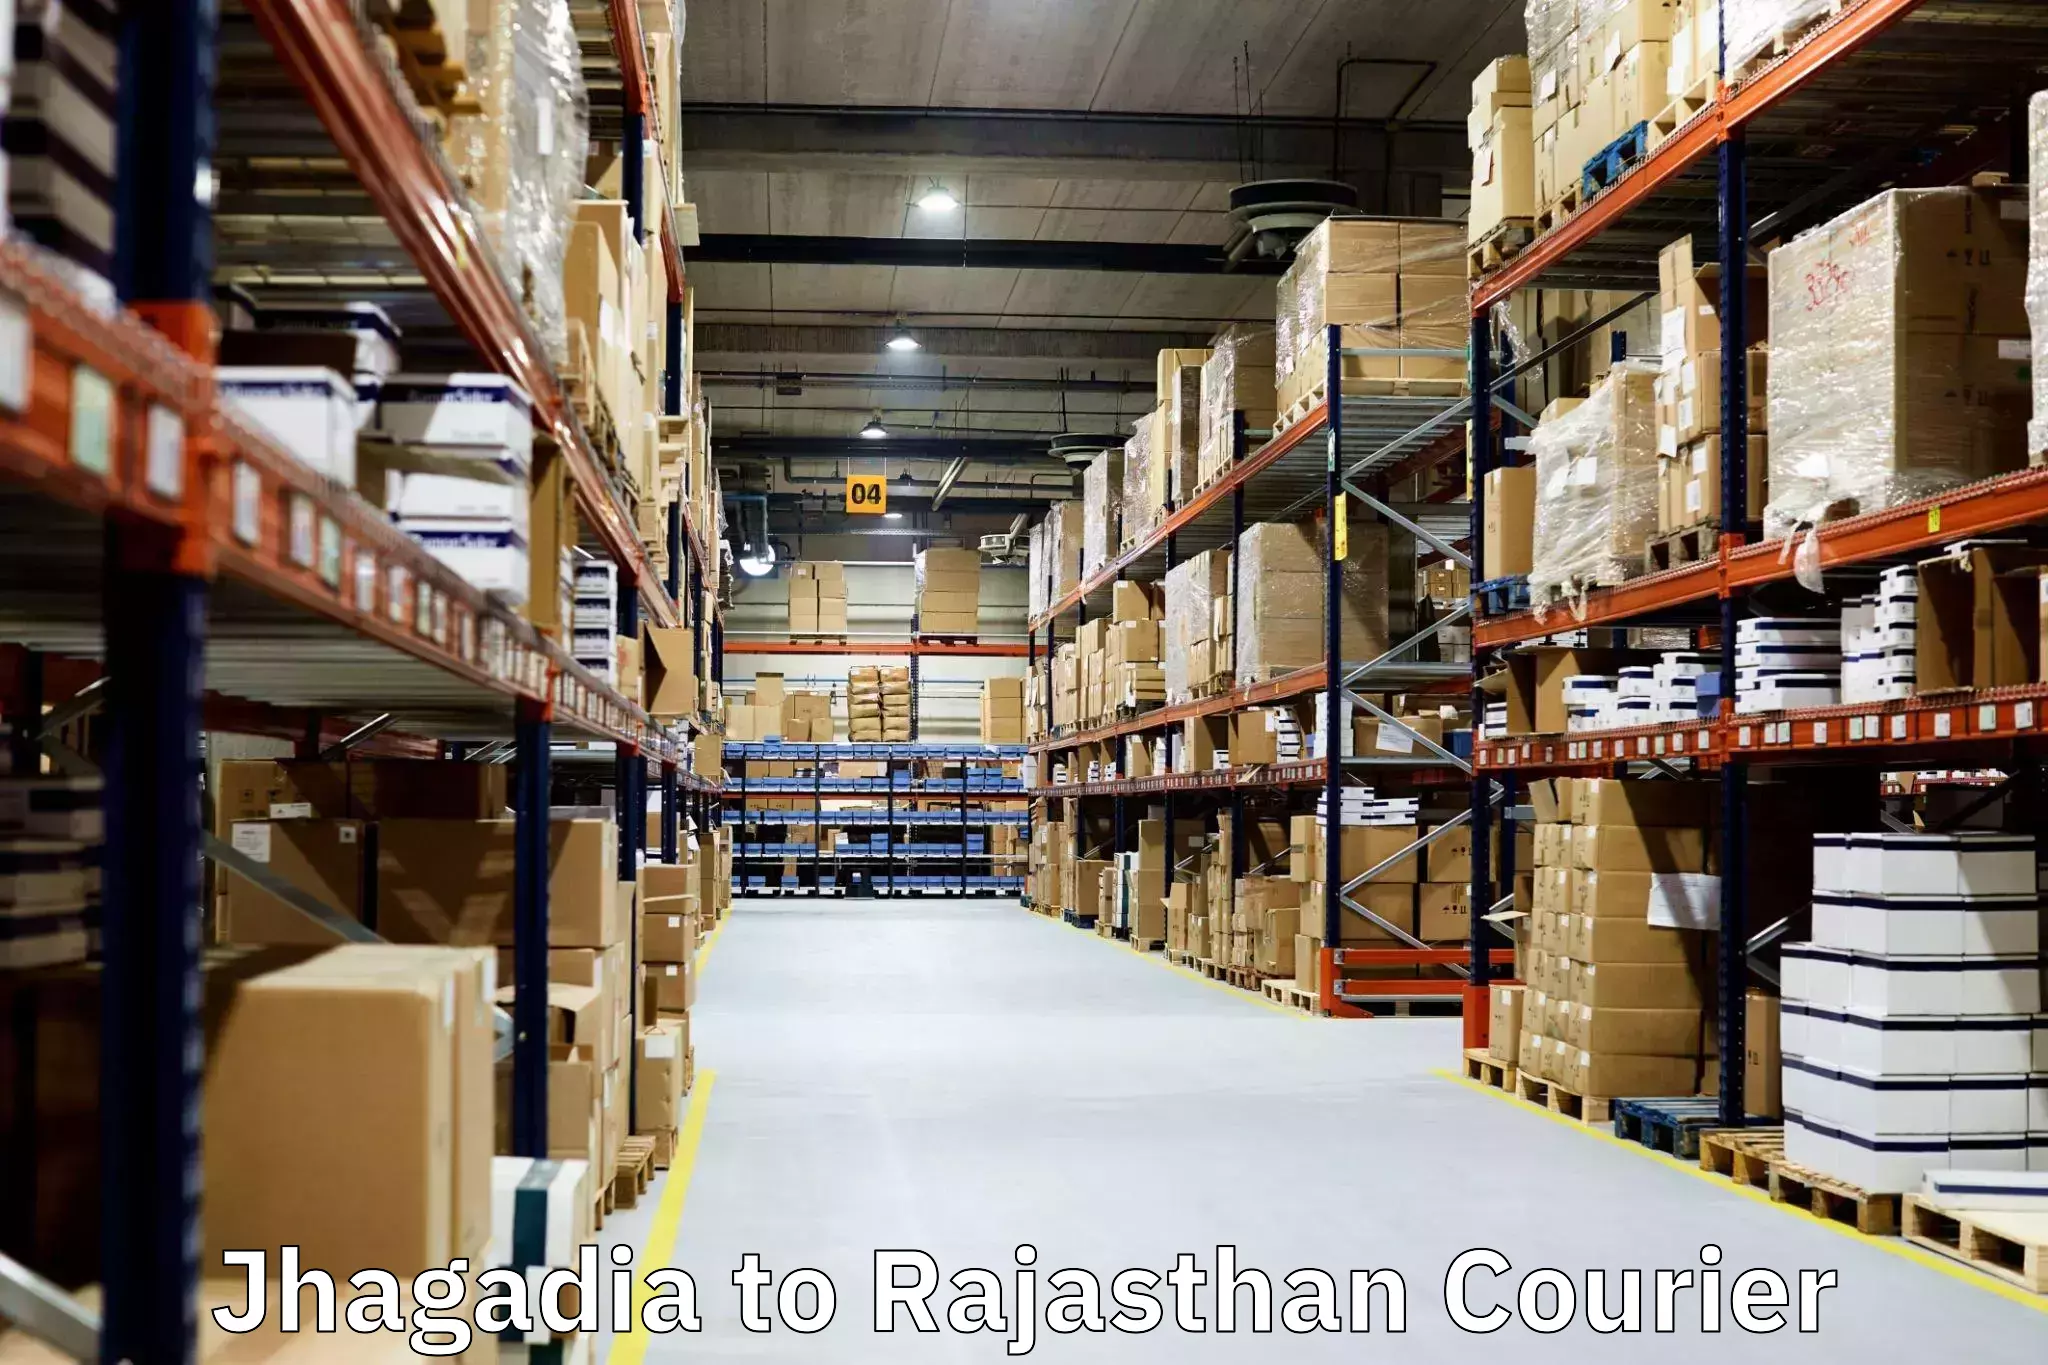 Expert moving and storage Jhagadia to Pratapgarh Rajasthan